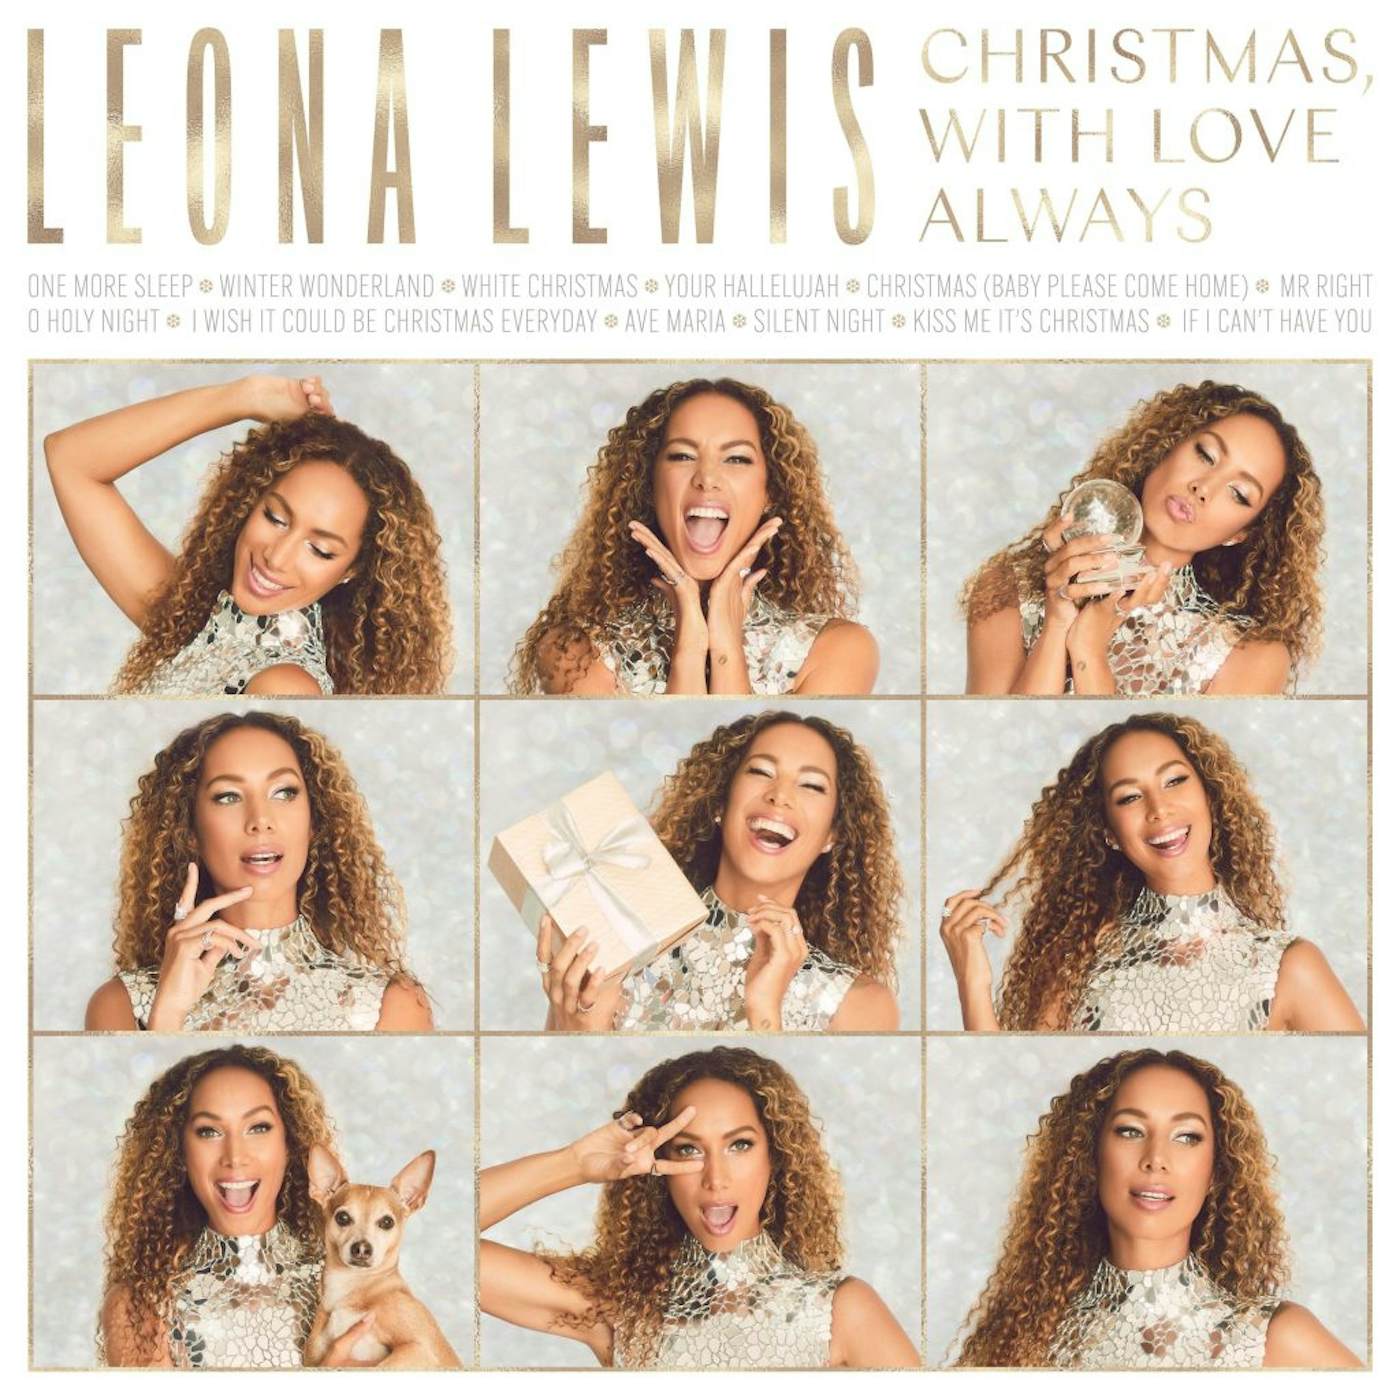 Leon Bridges Leona Lewis - Christmas With Love Always